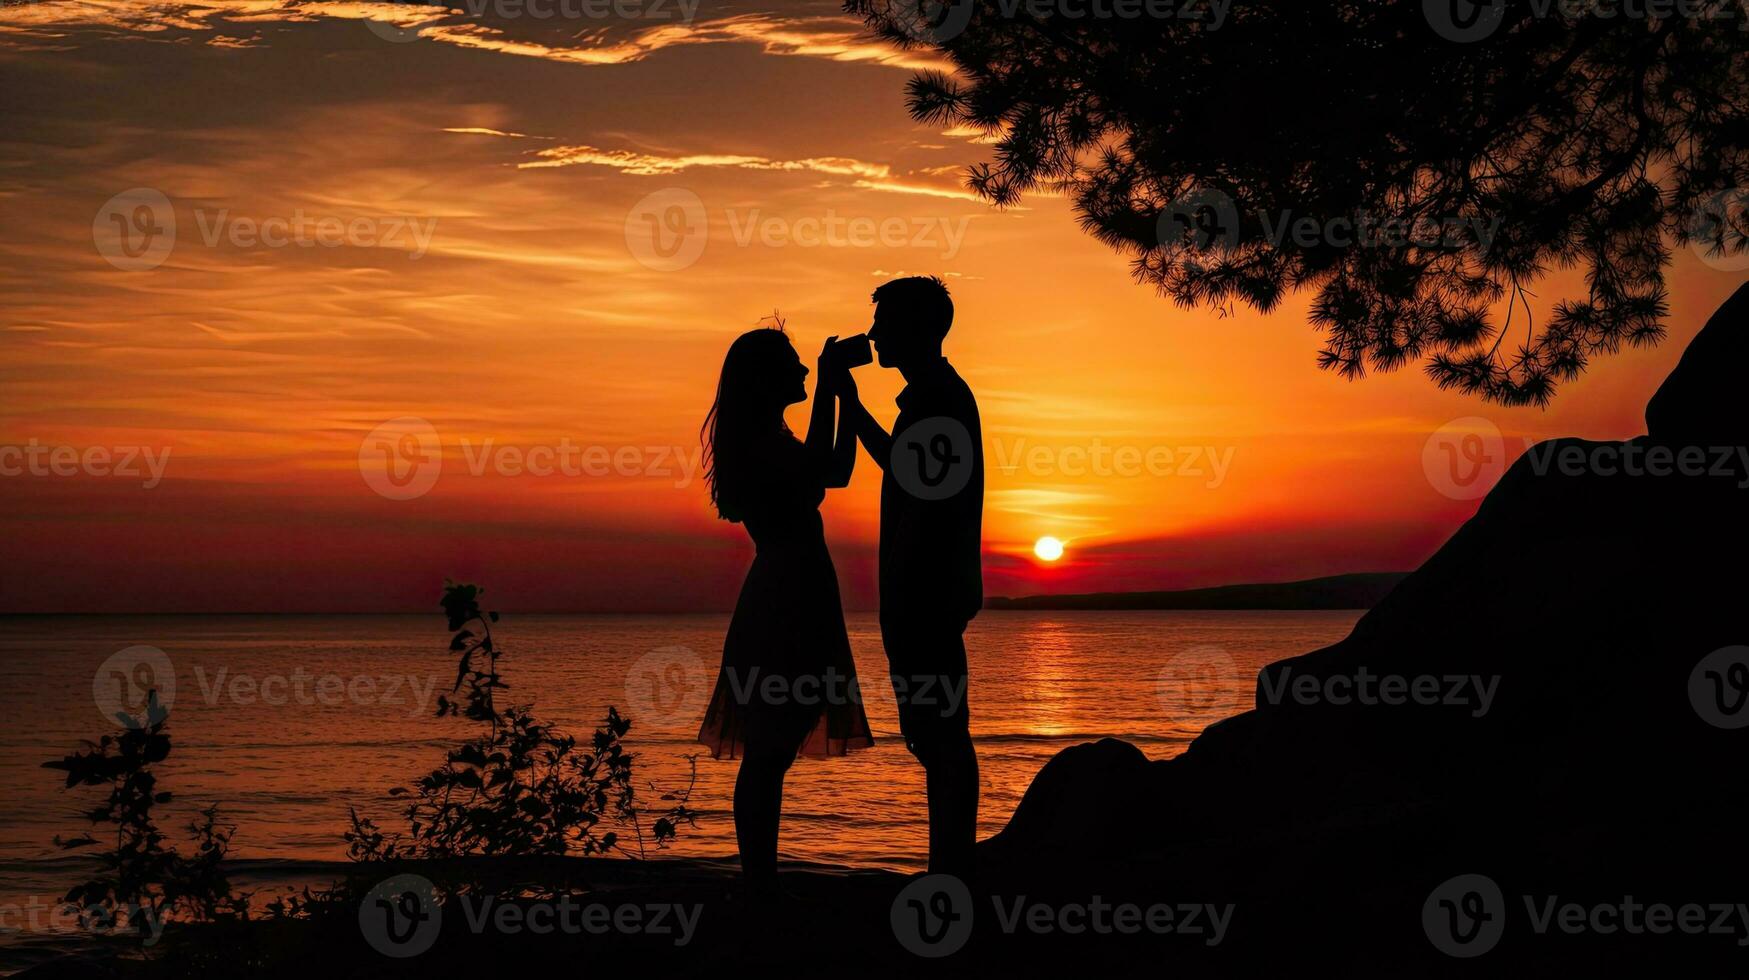 ein Sonnenuntergang Selfie mit ein Paar im Silhouette gegen das Meer foto